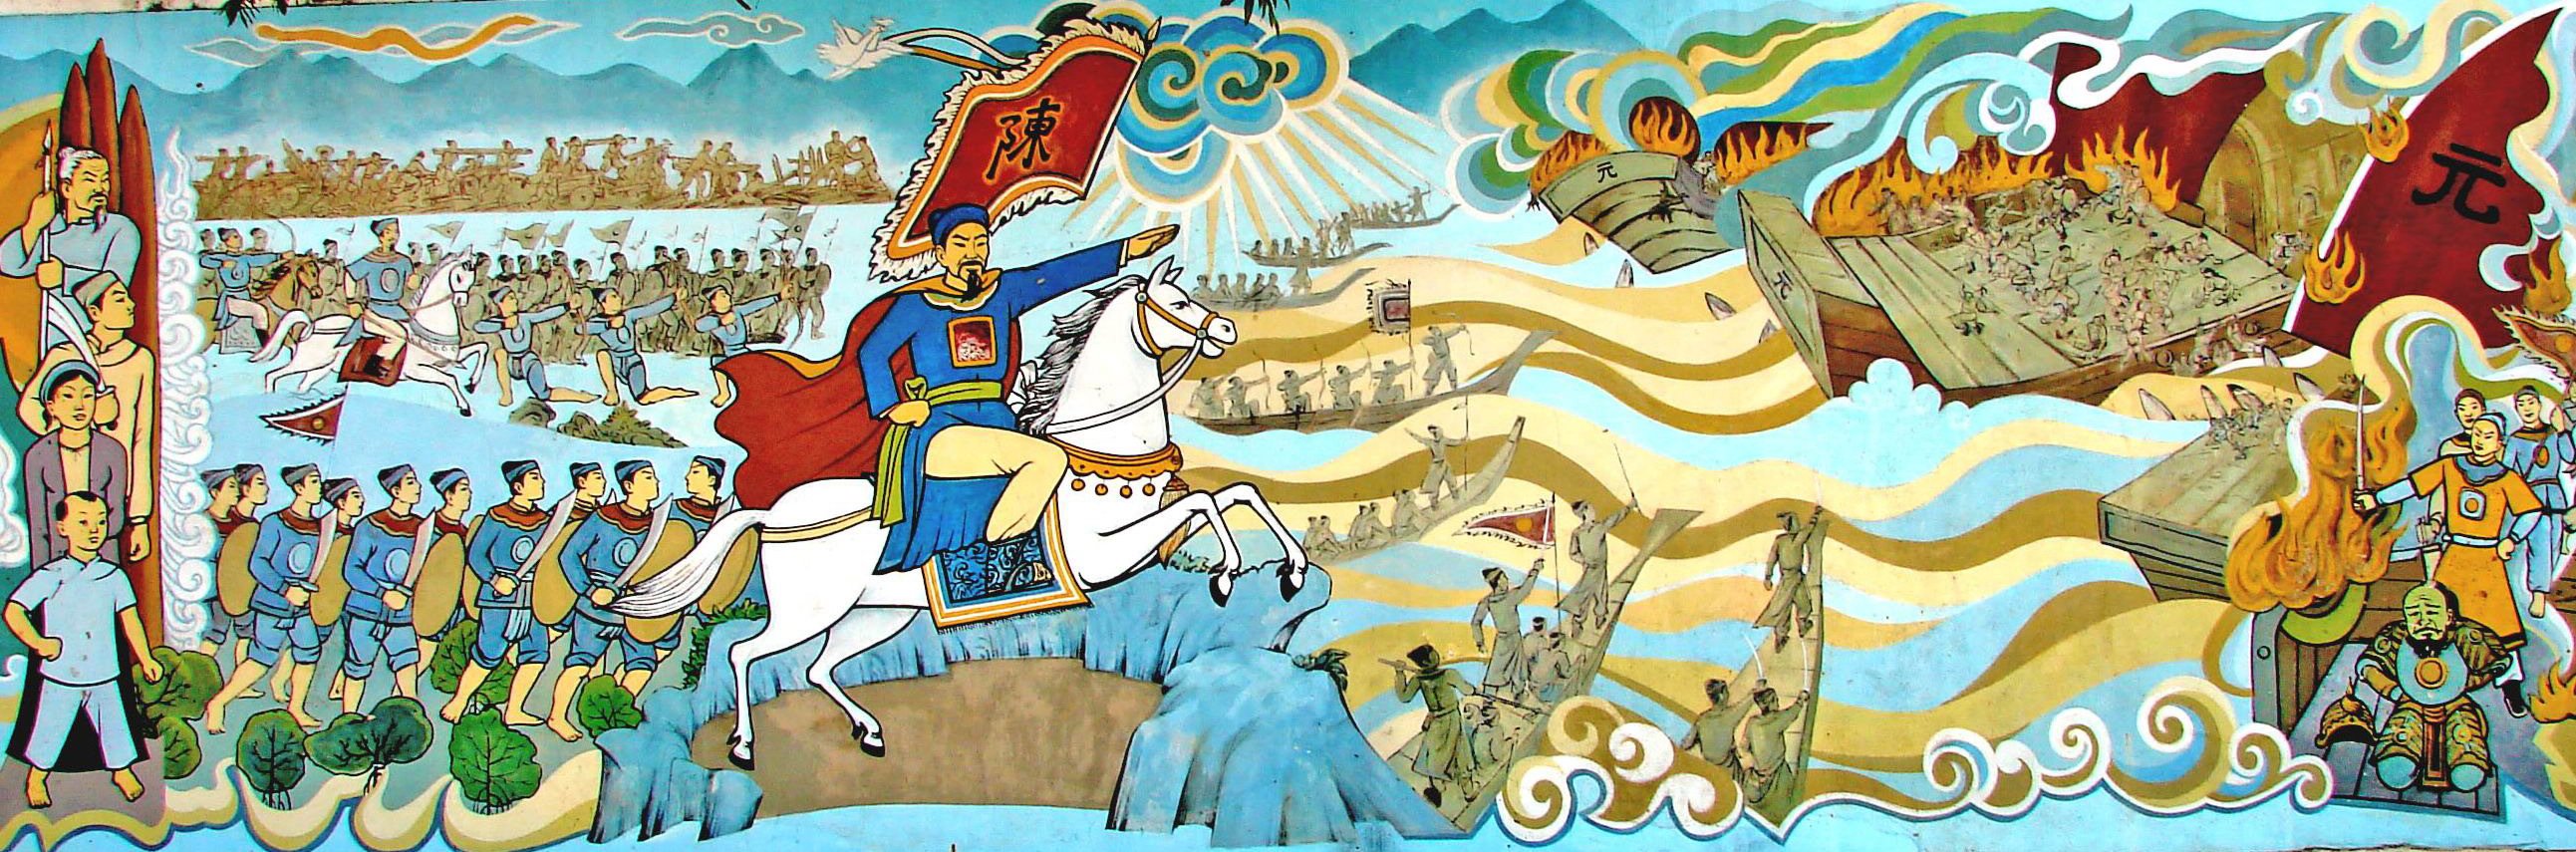 Xung quanh chiến thắng Bạch Đằng năm 1288 có rất nhiều truyền thuyết dân gian.